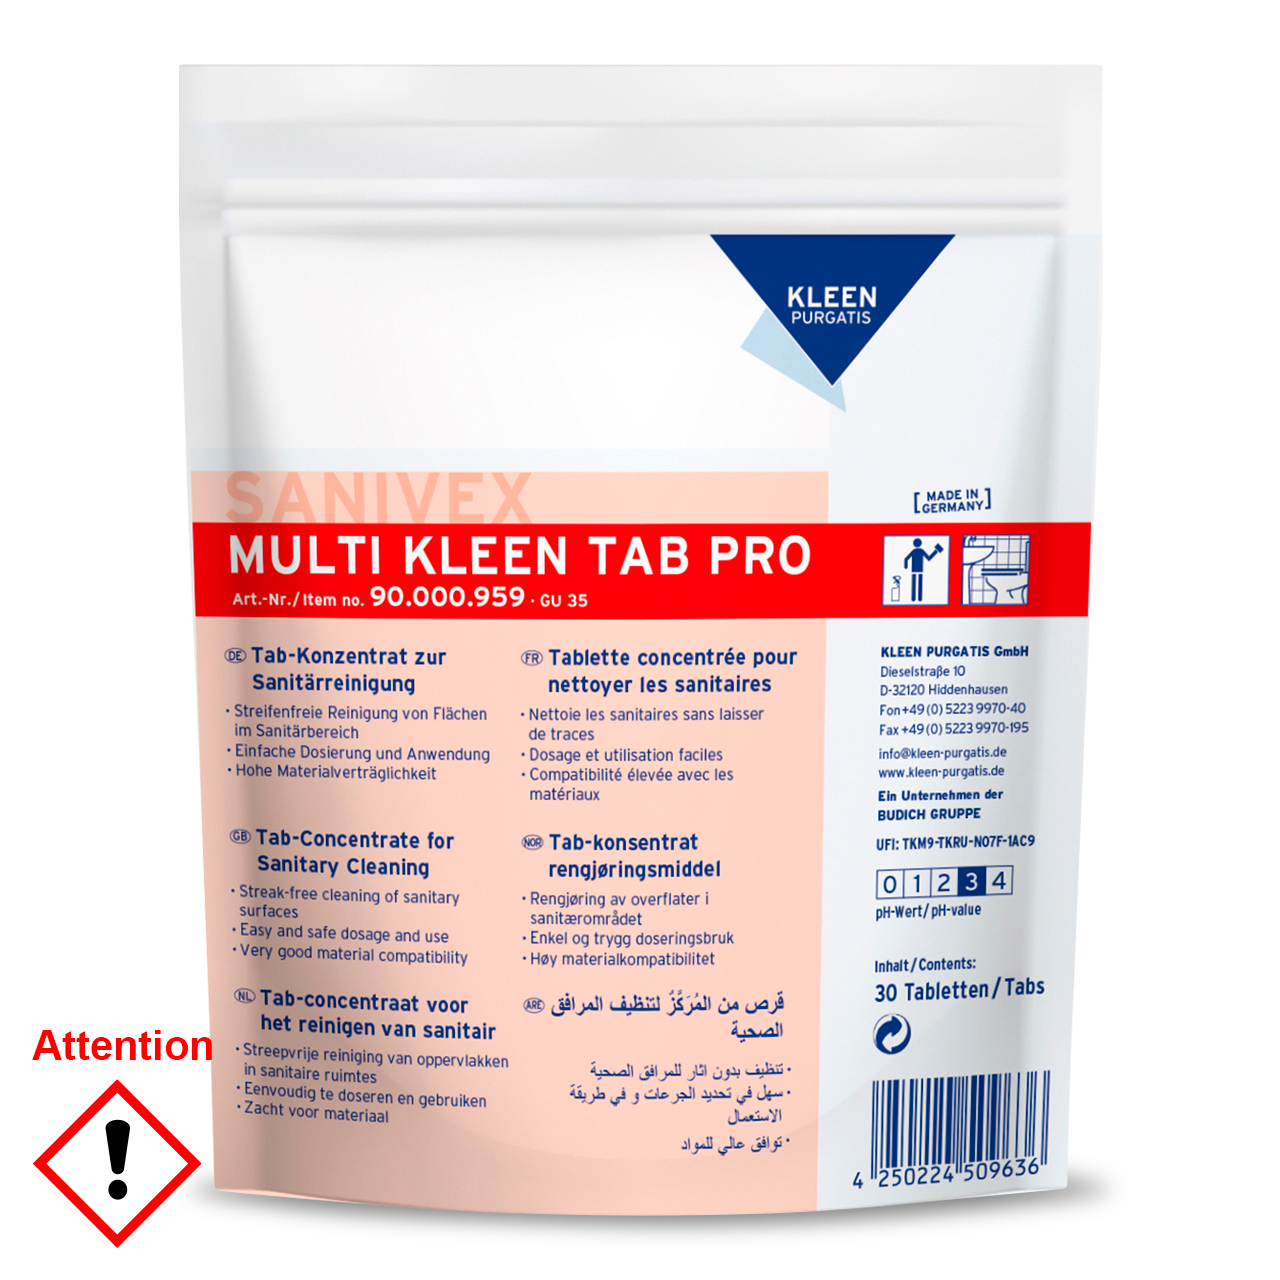 Sanivex Multi Kleen Tab Pro, 30 Tabs à 3 g